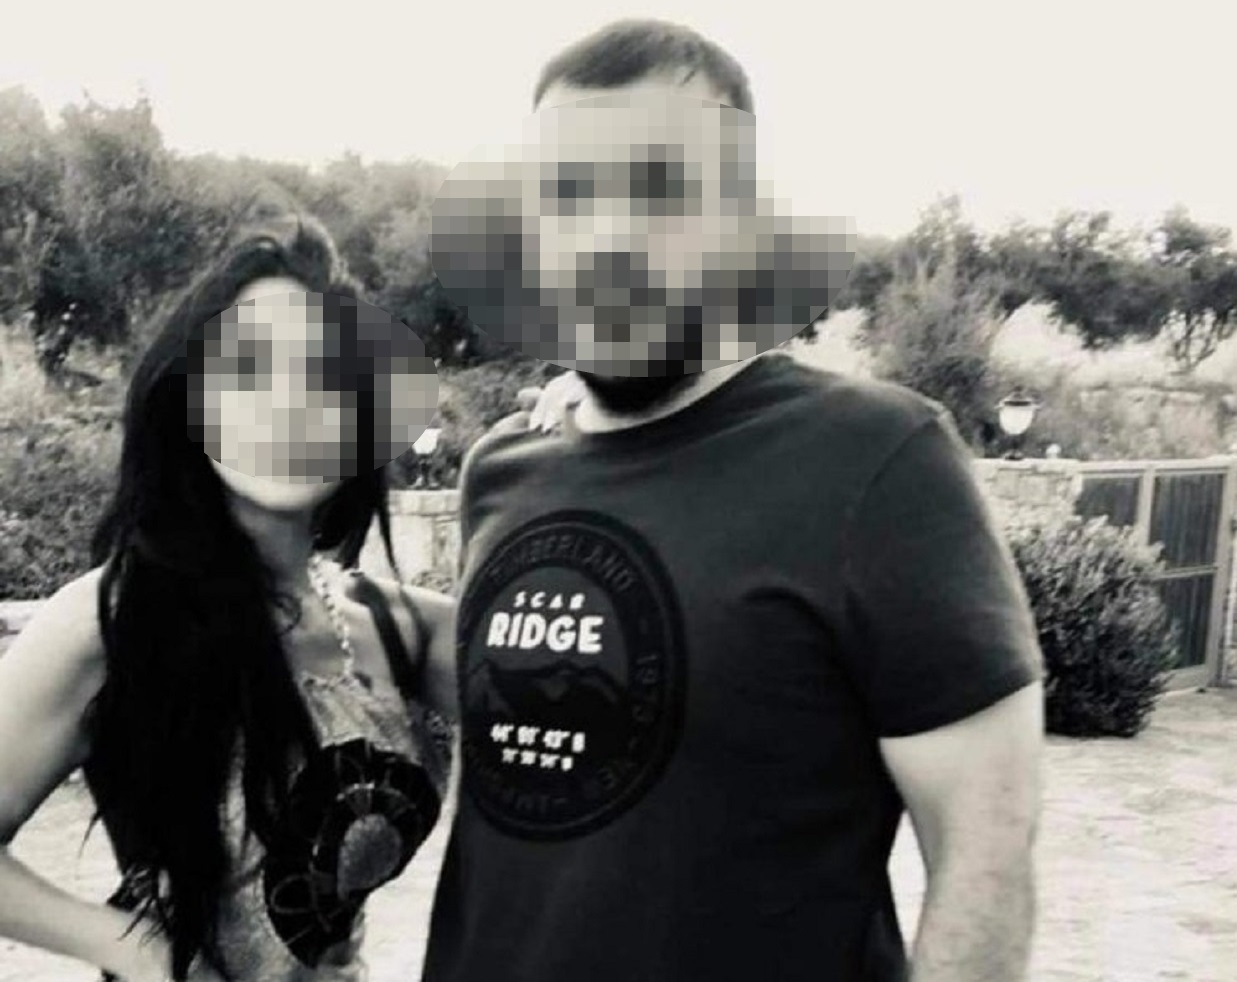 Επίθεση με καυστικό υγρό στο Ηράκλειο: «Η κόρη μου λέει ψέμματα, δεν της είχε κάνει τίποτα» λέει ο πατέρας της 38χρονης